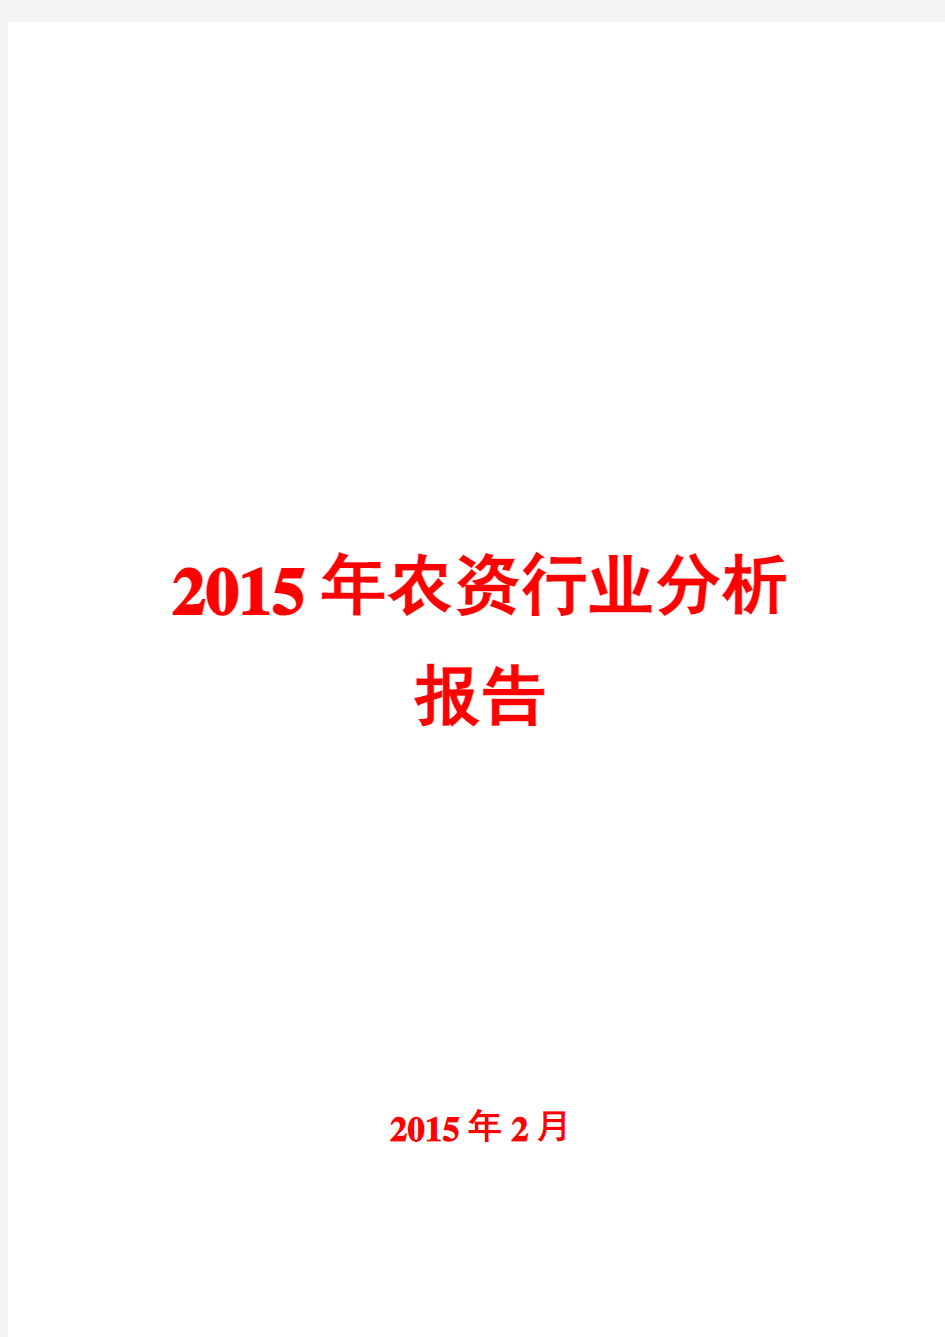 2015年农资行业分析报告